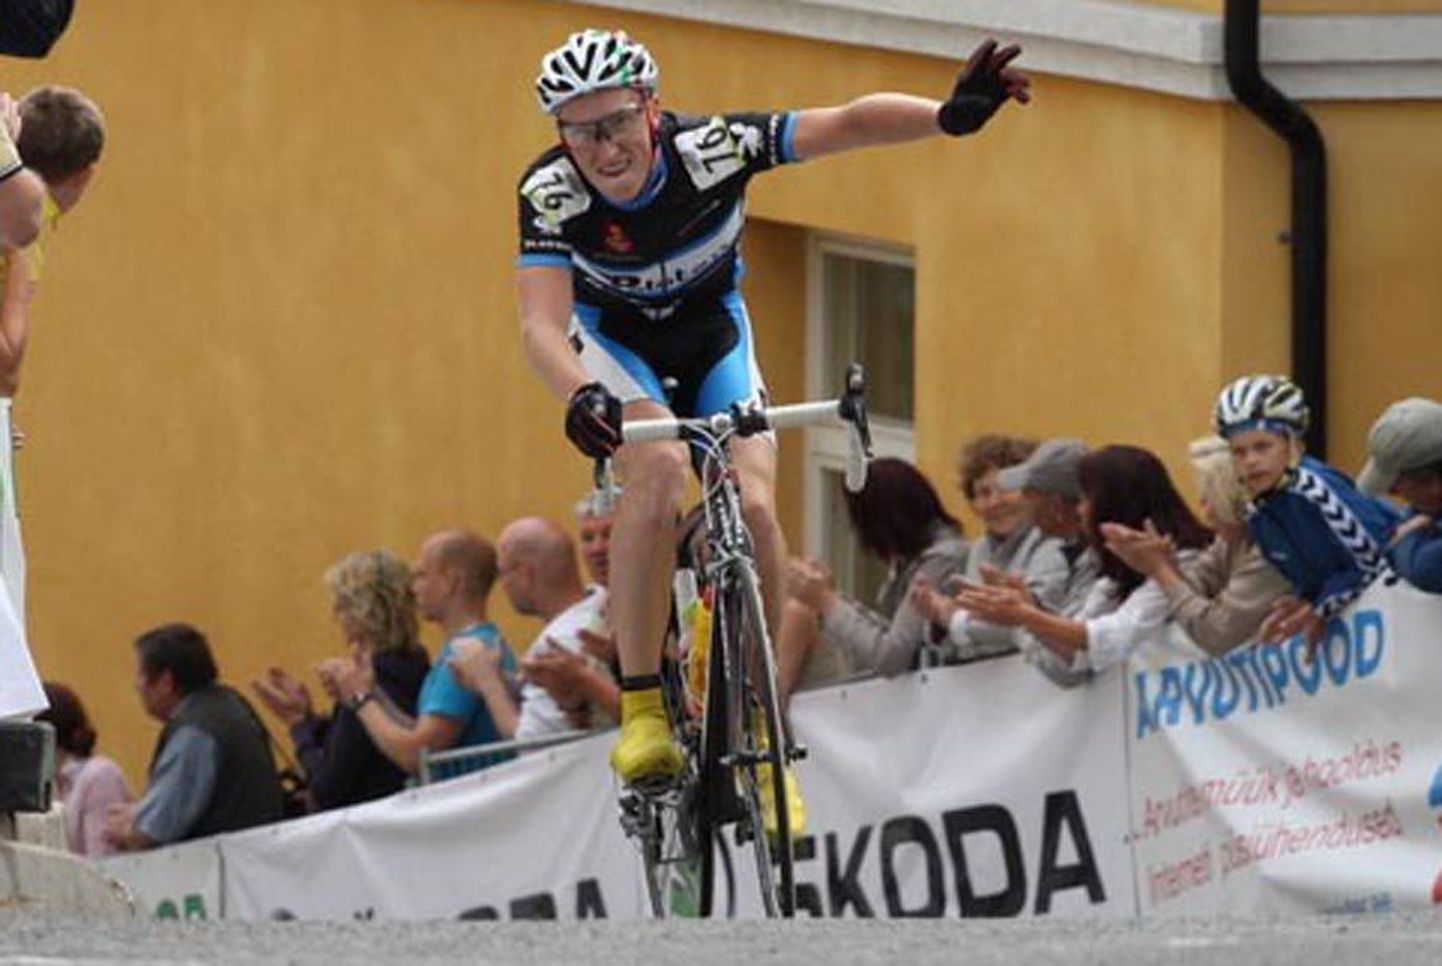 Saaremaa velotuuri teise etapi võitis Ivo Suur.